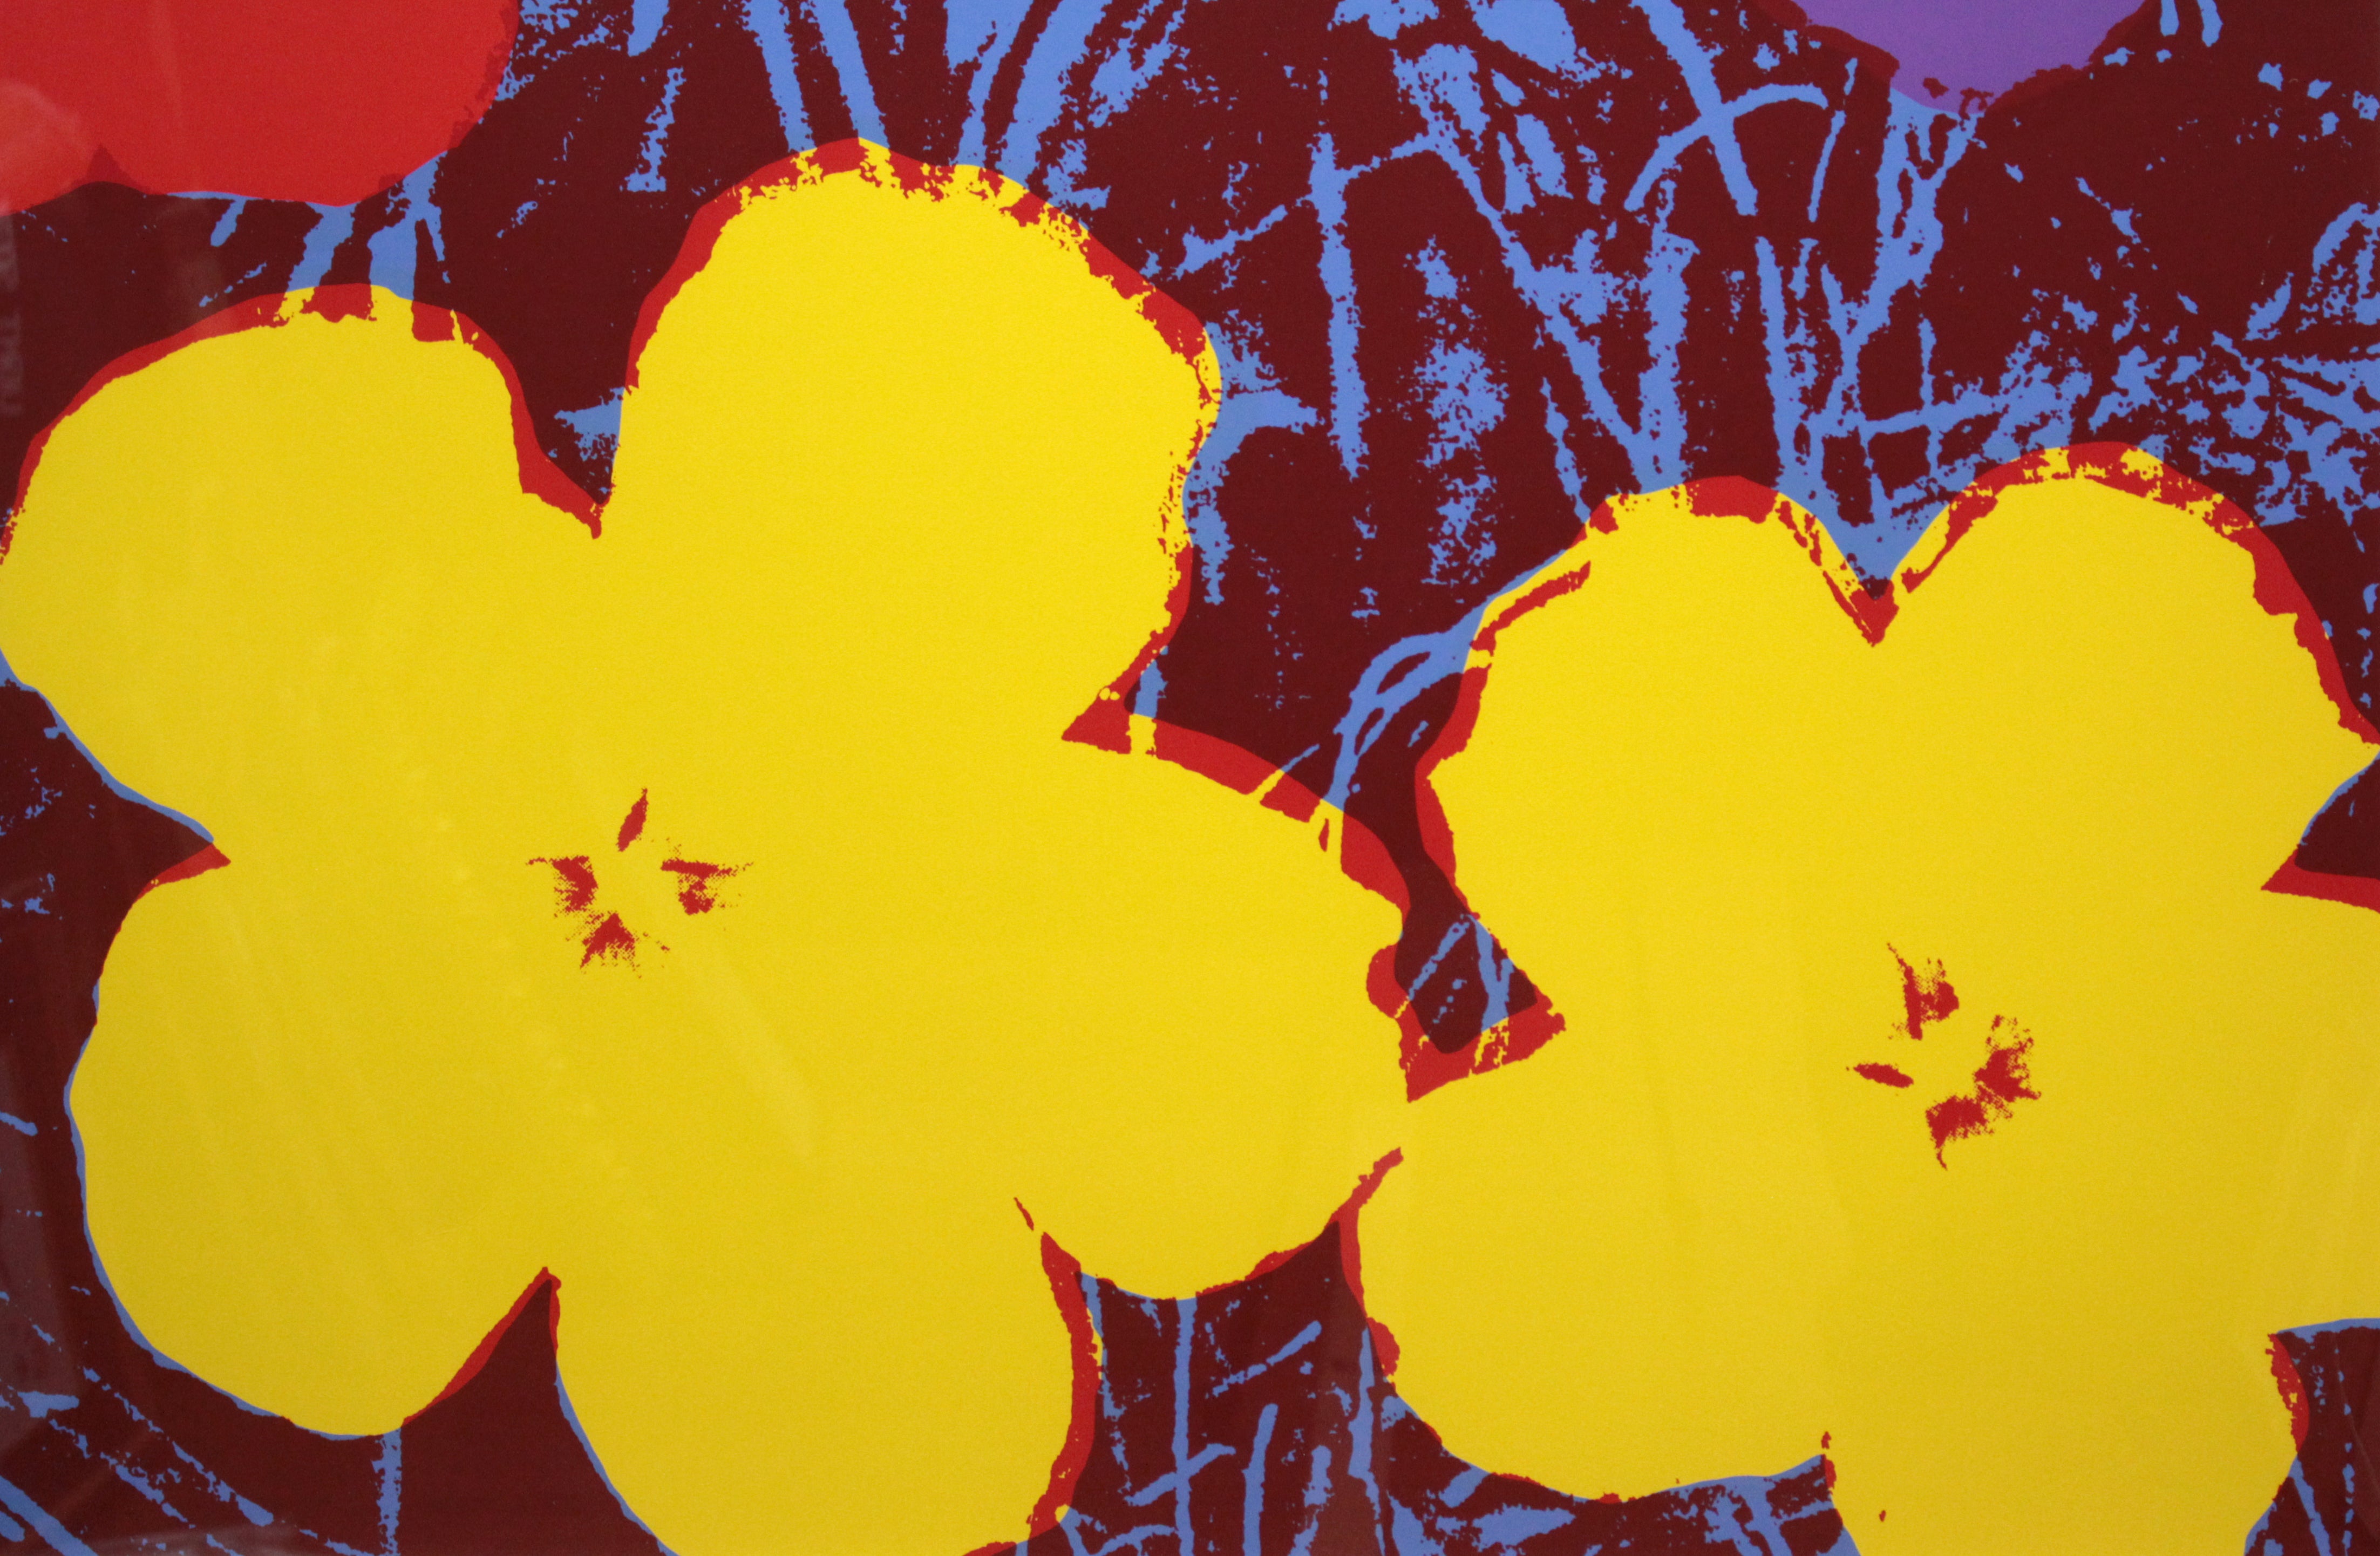 アンディ・ウォーホル『Flowers』(シャープ)2 絵画 アンディ・ウォーホルの代表作 【正規品保証】111027